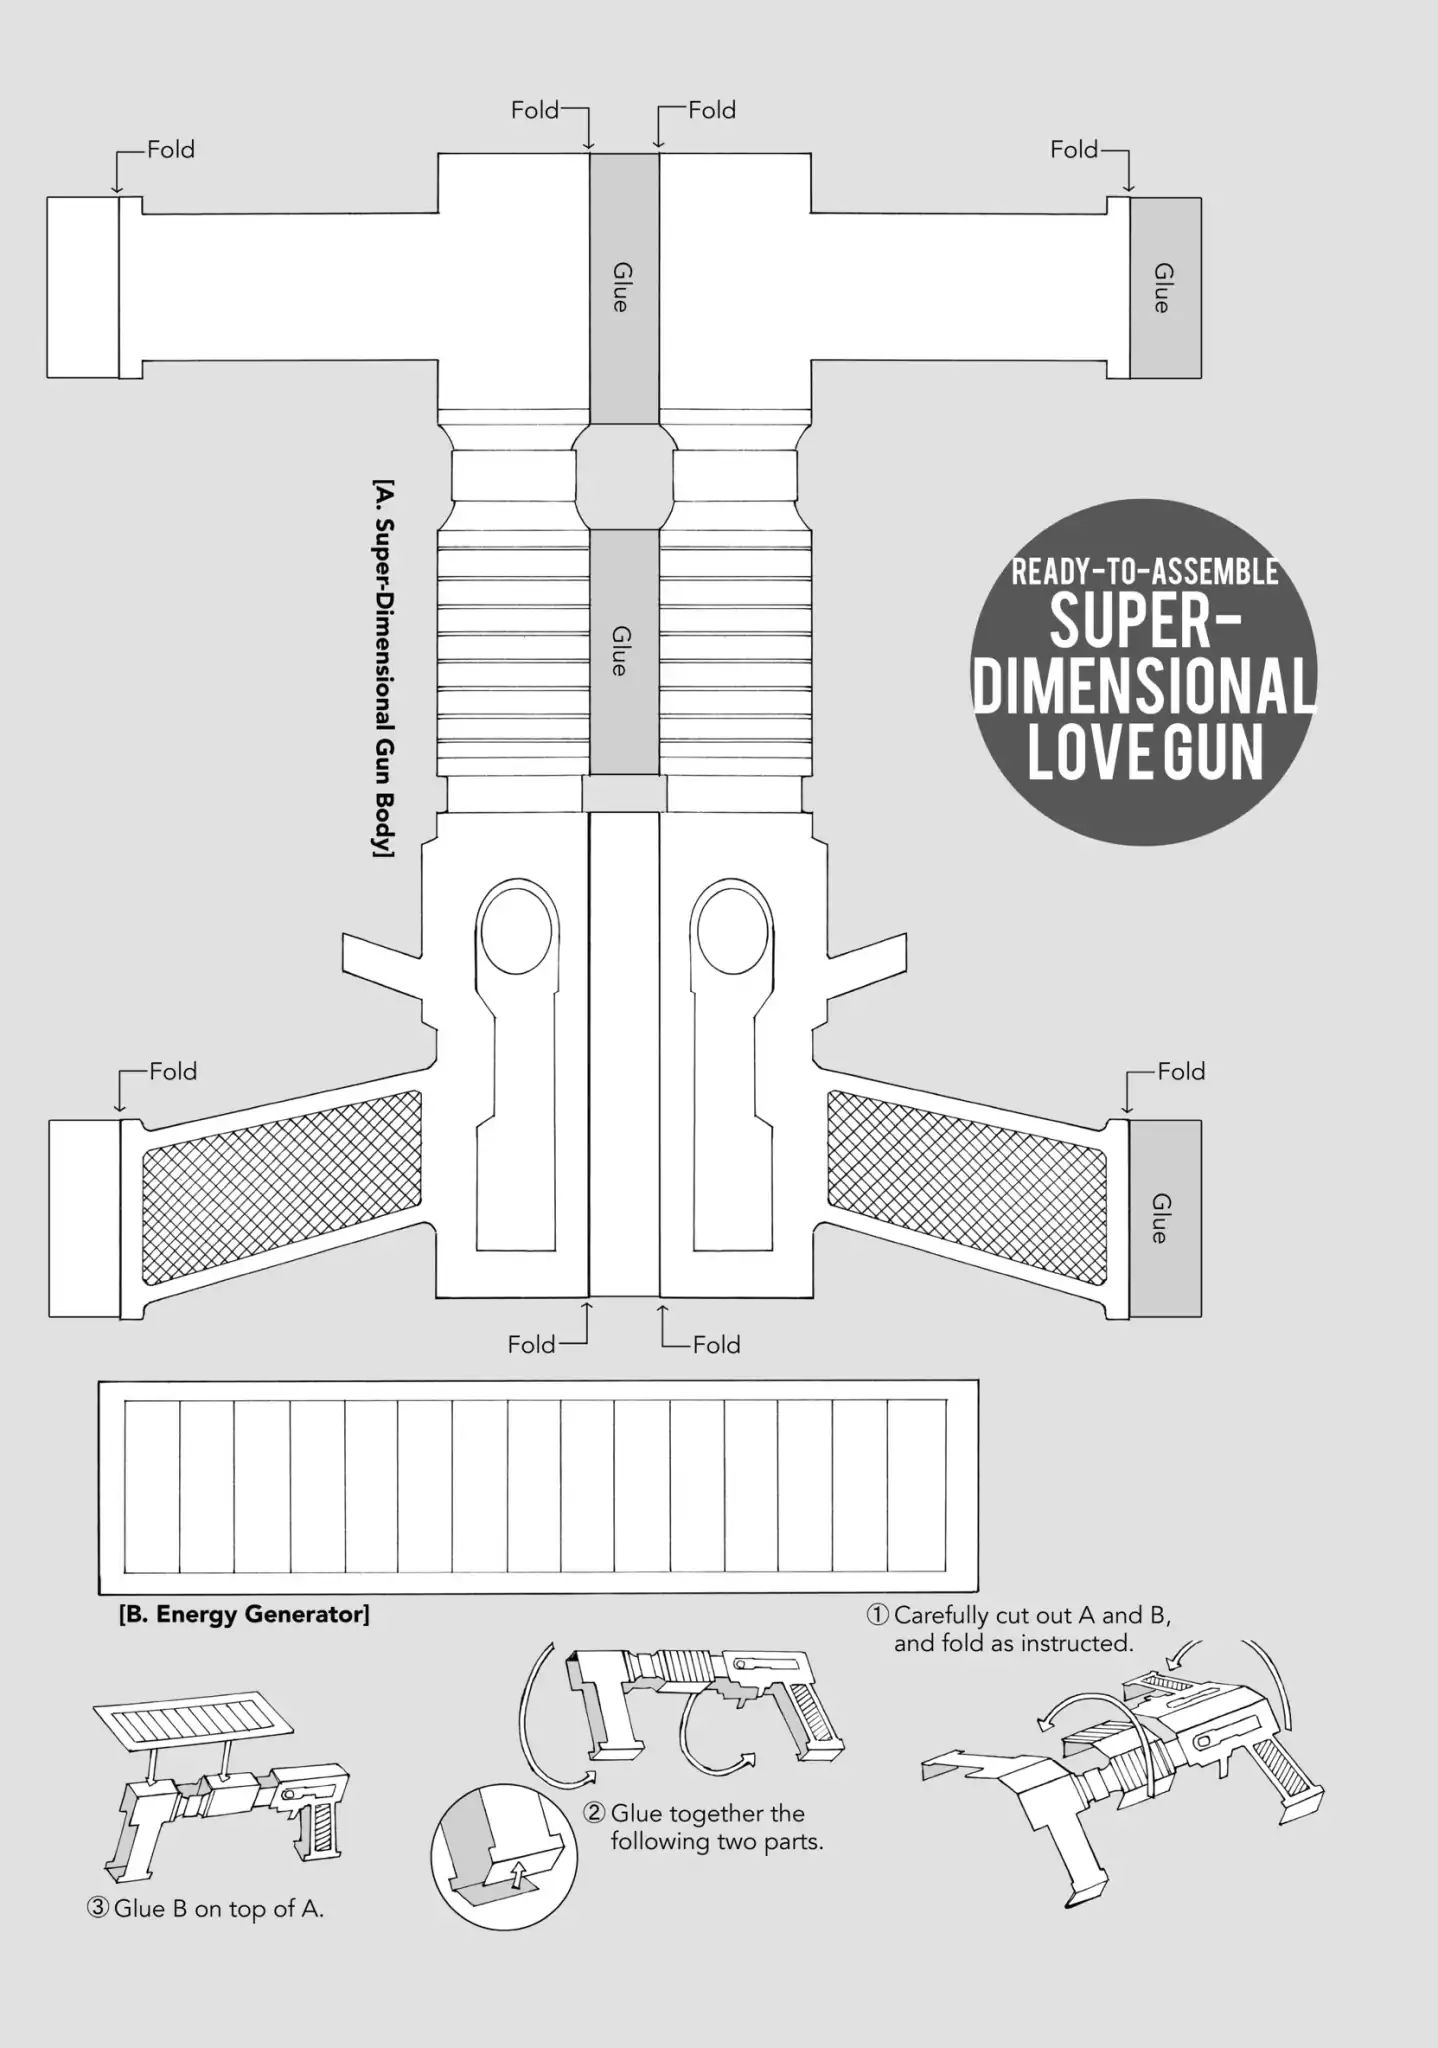 Super Dimensional Love Gun Ready-To-Assemble Super Dimensional Love Gun - Picture 1